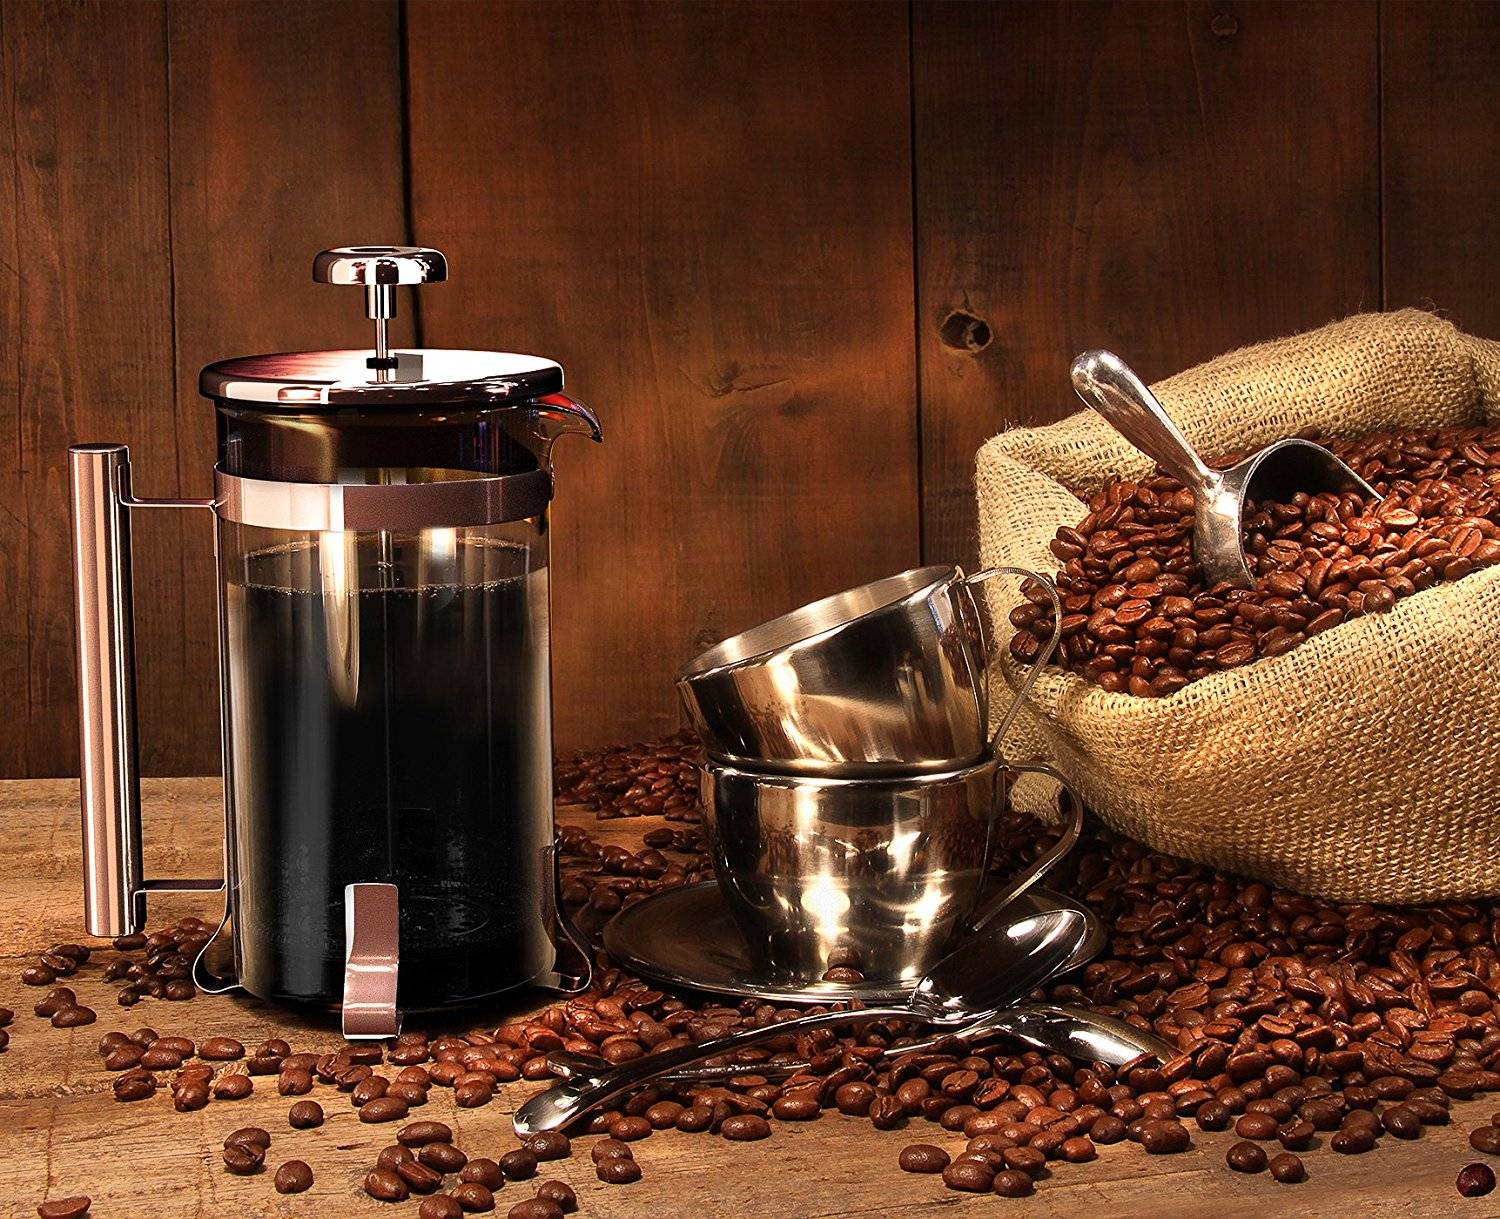 Френч-пресс для кофе, как им правильно пользоваться, рецепты приготовления